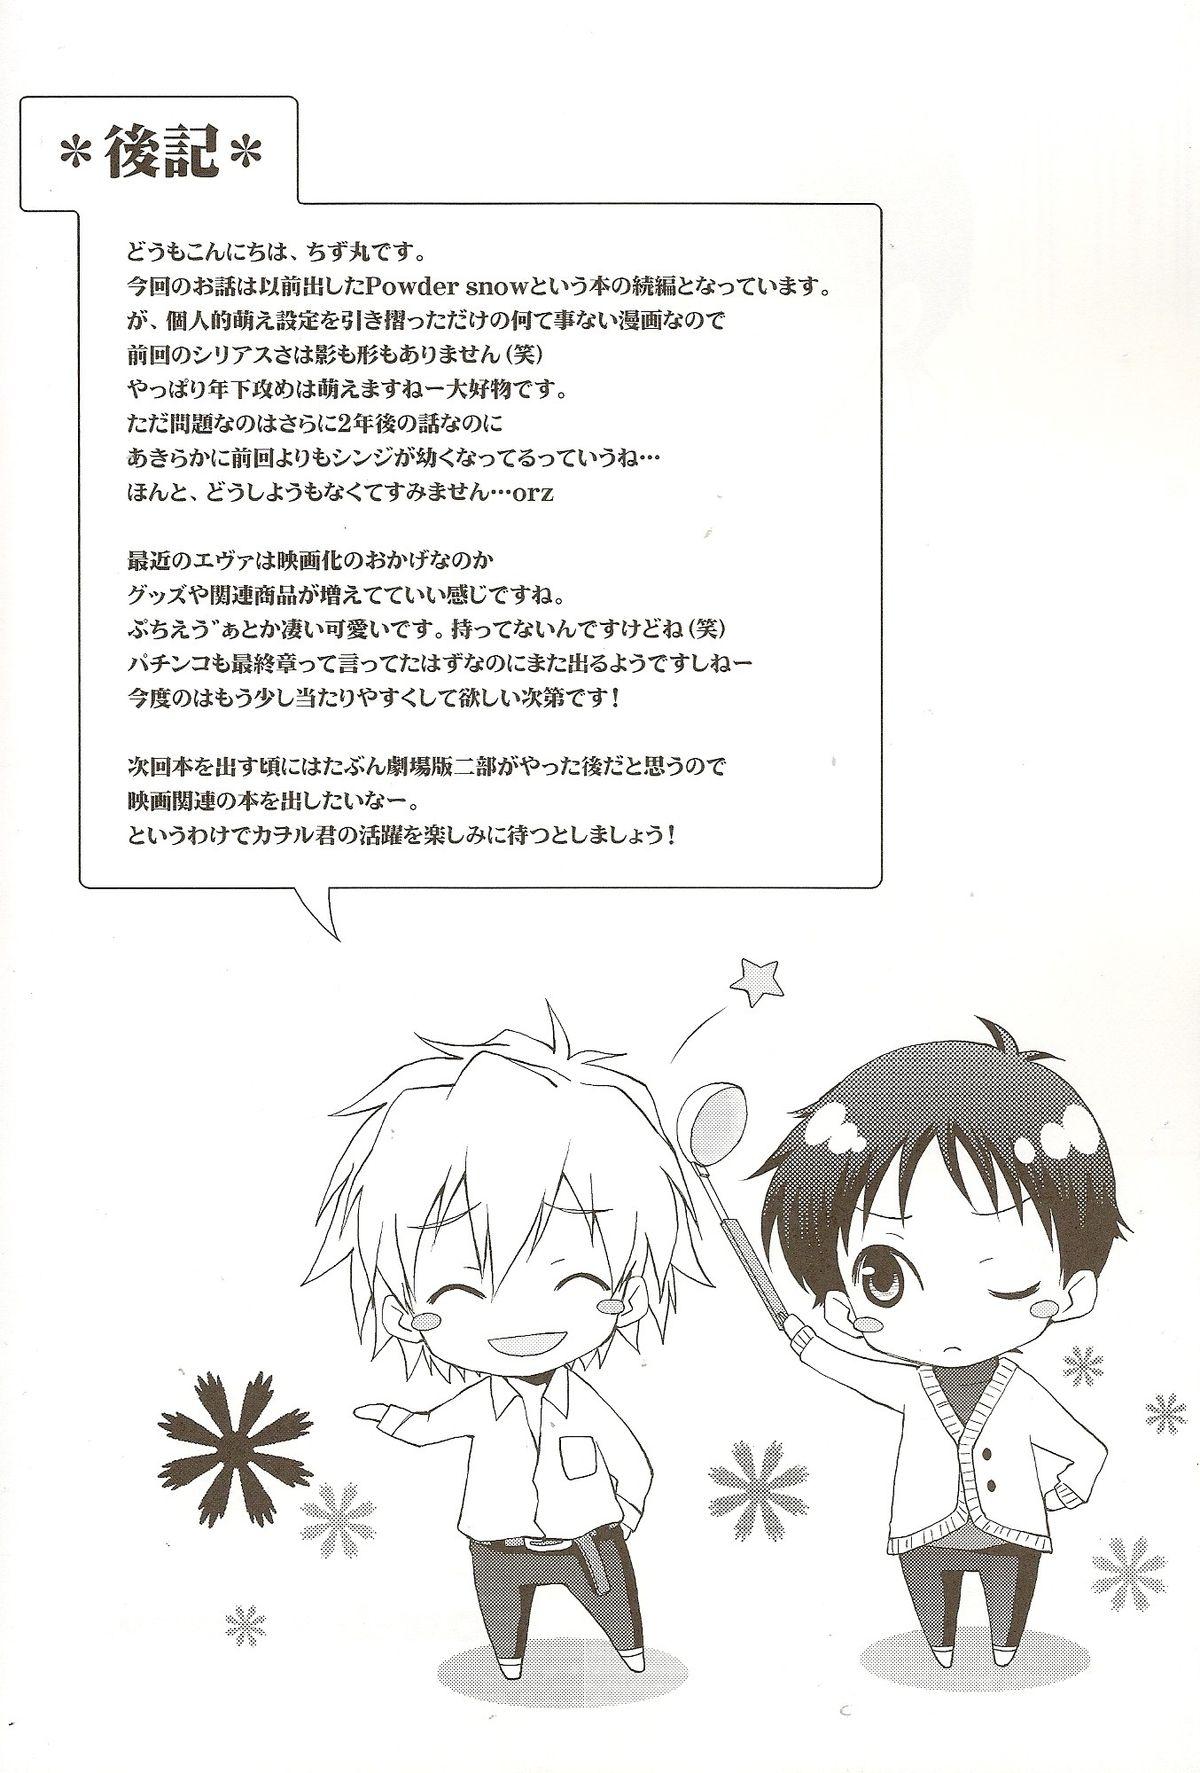 Onlyfans Powder snow... no tsuzuki! - Neon genesis evangelion Uniform - Page 33